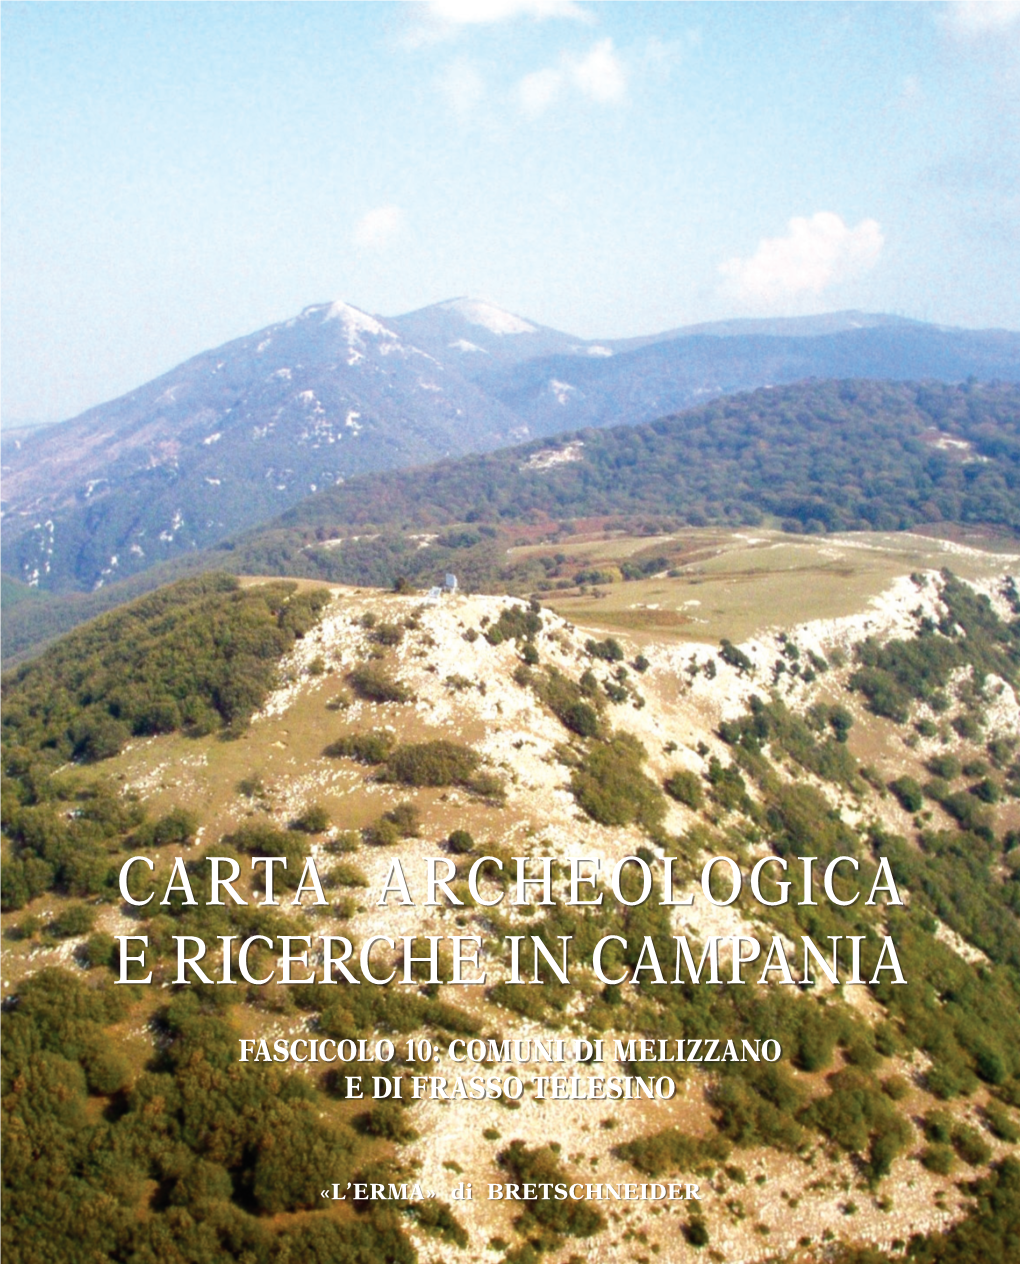 Carta Archeologica E Ricerche in Campania (Fascicoli 1-10), Roma 2004-2017